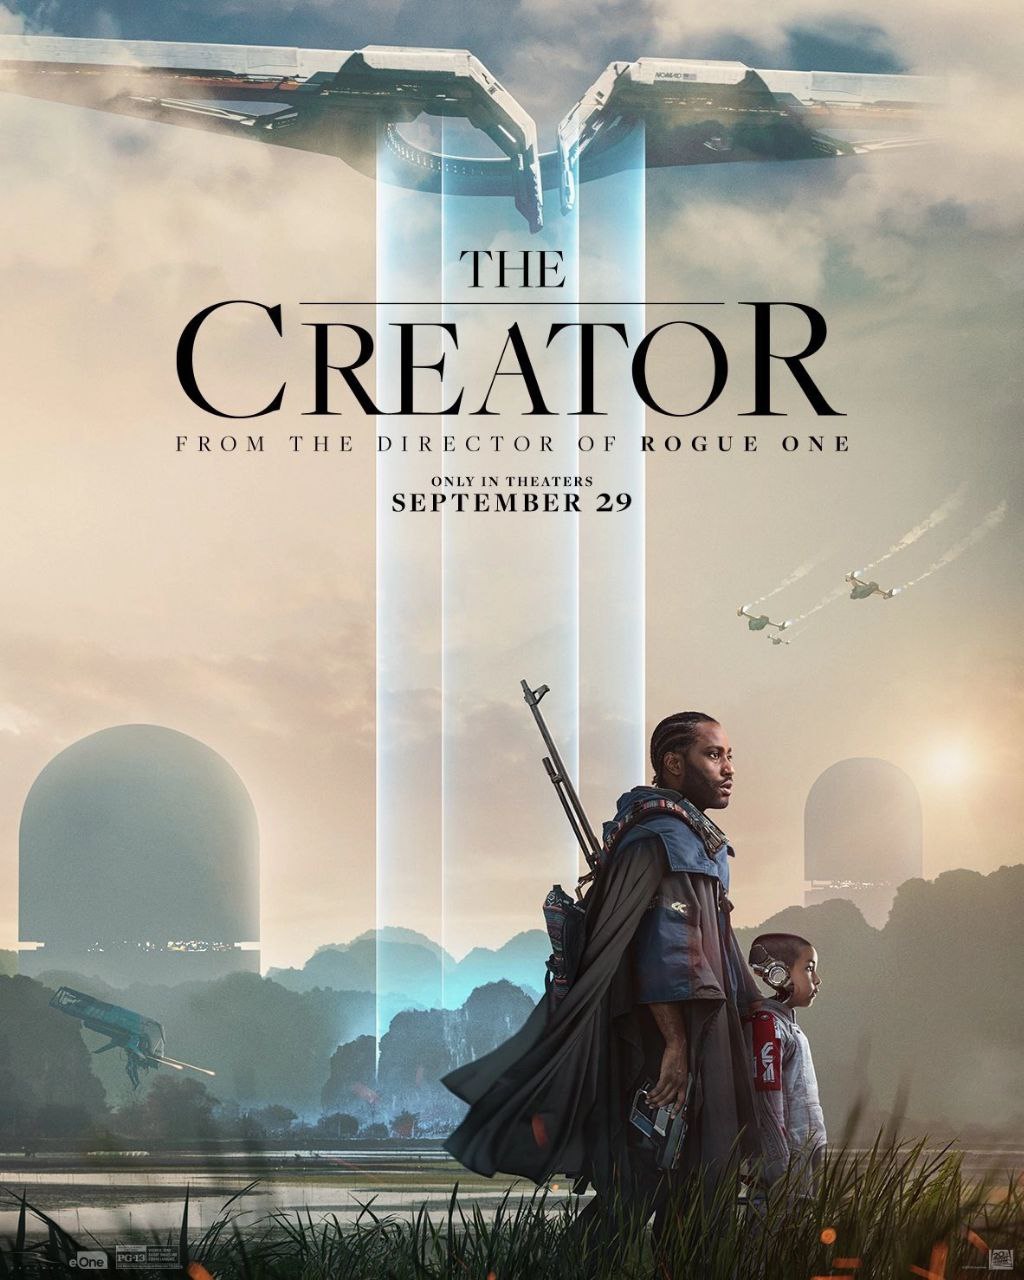 Опубликовали новый постер к фильму «Создатель»